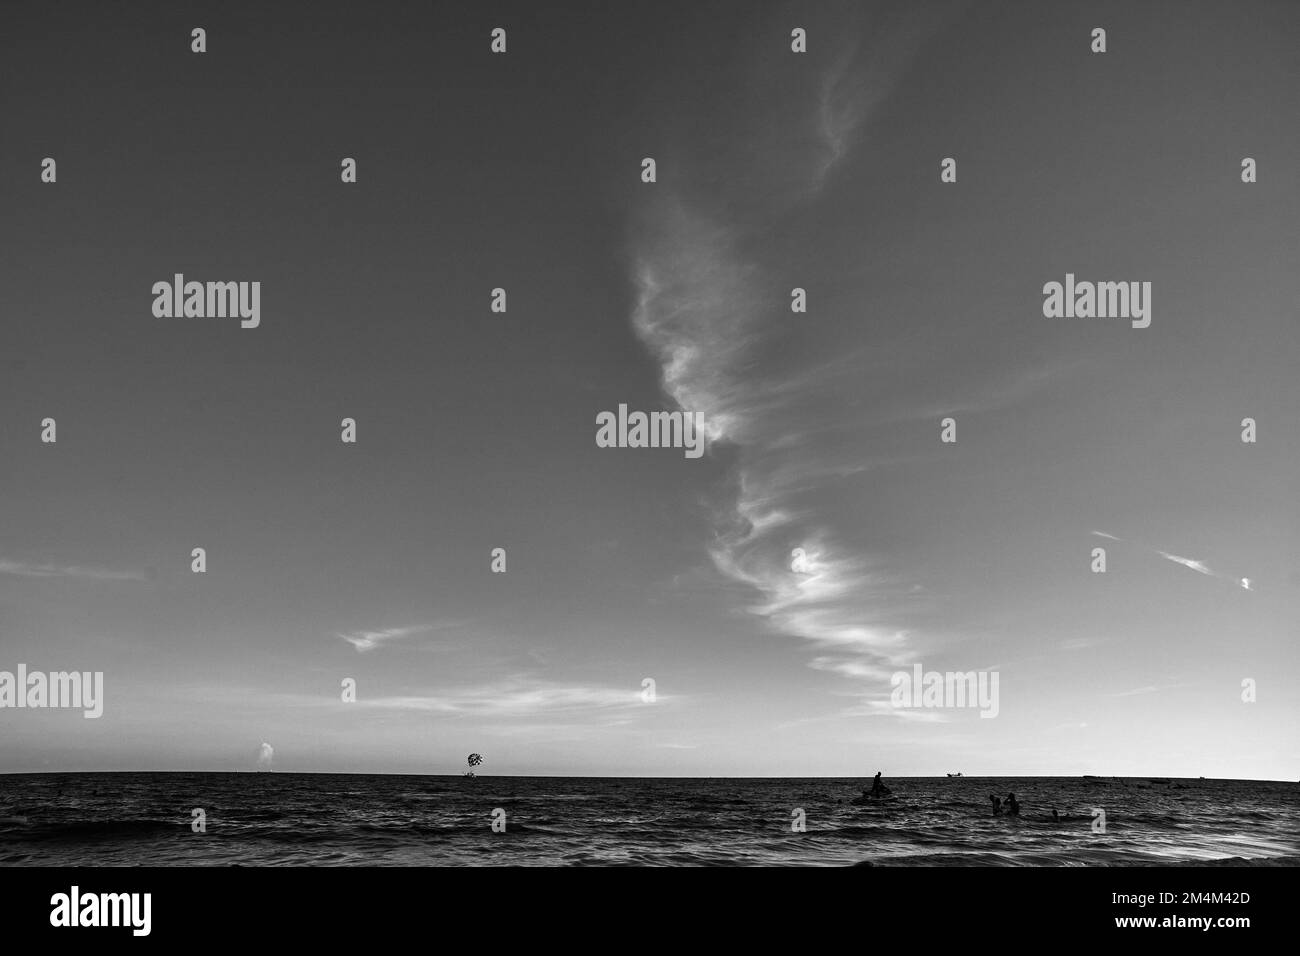 Una scala di grigi di persone lontane nel mare contro un cielo senza nuvole Foto Stock